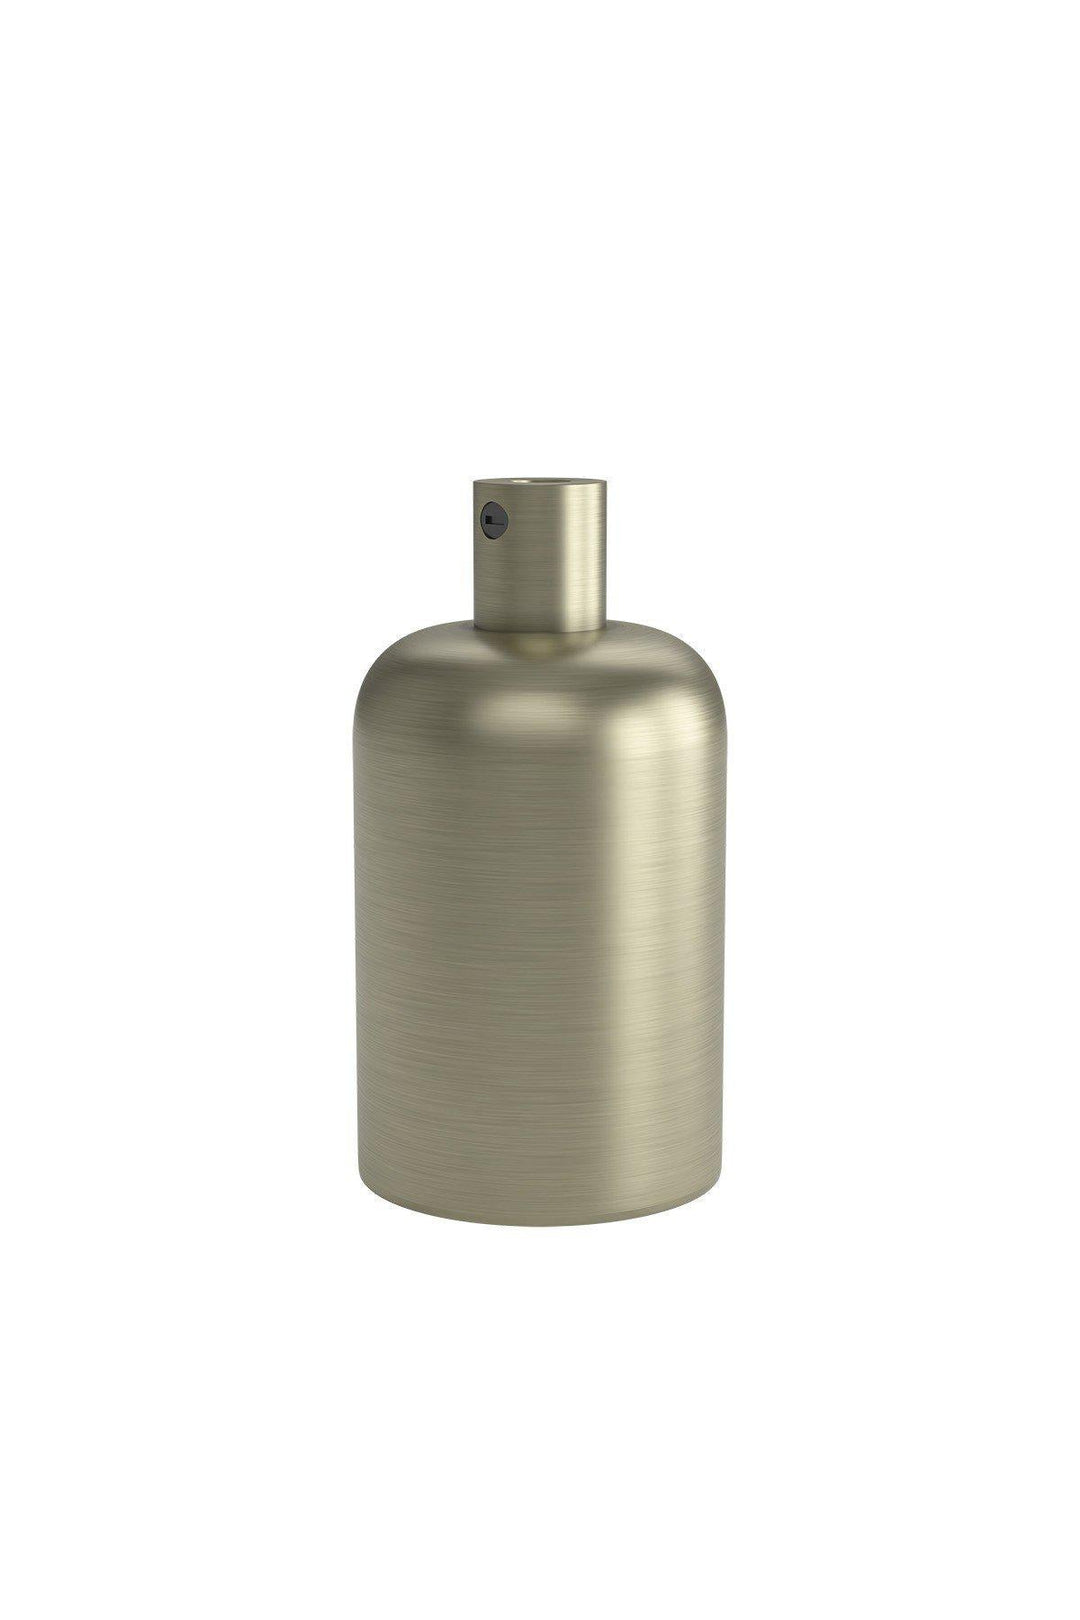 Calex Aluminium Lamp Holder E27 Satin Bronze - 940404